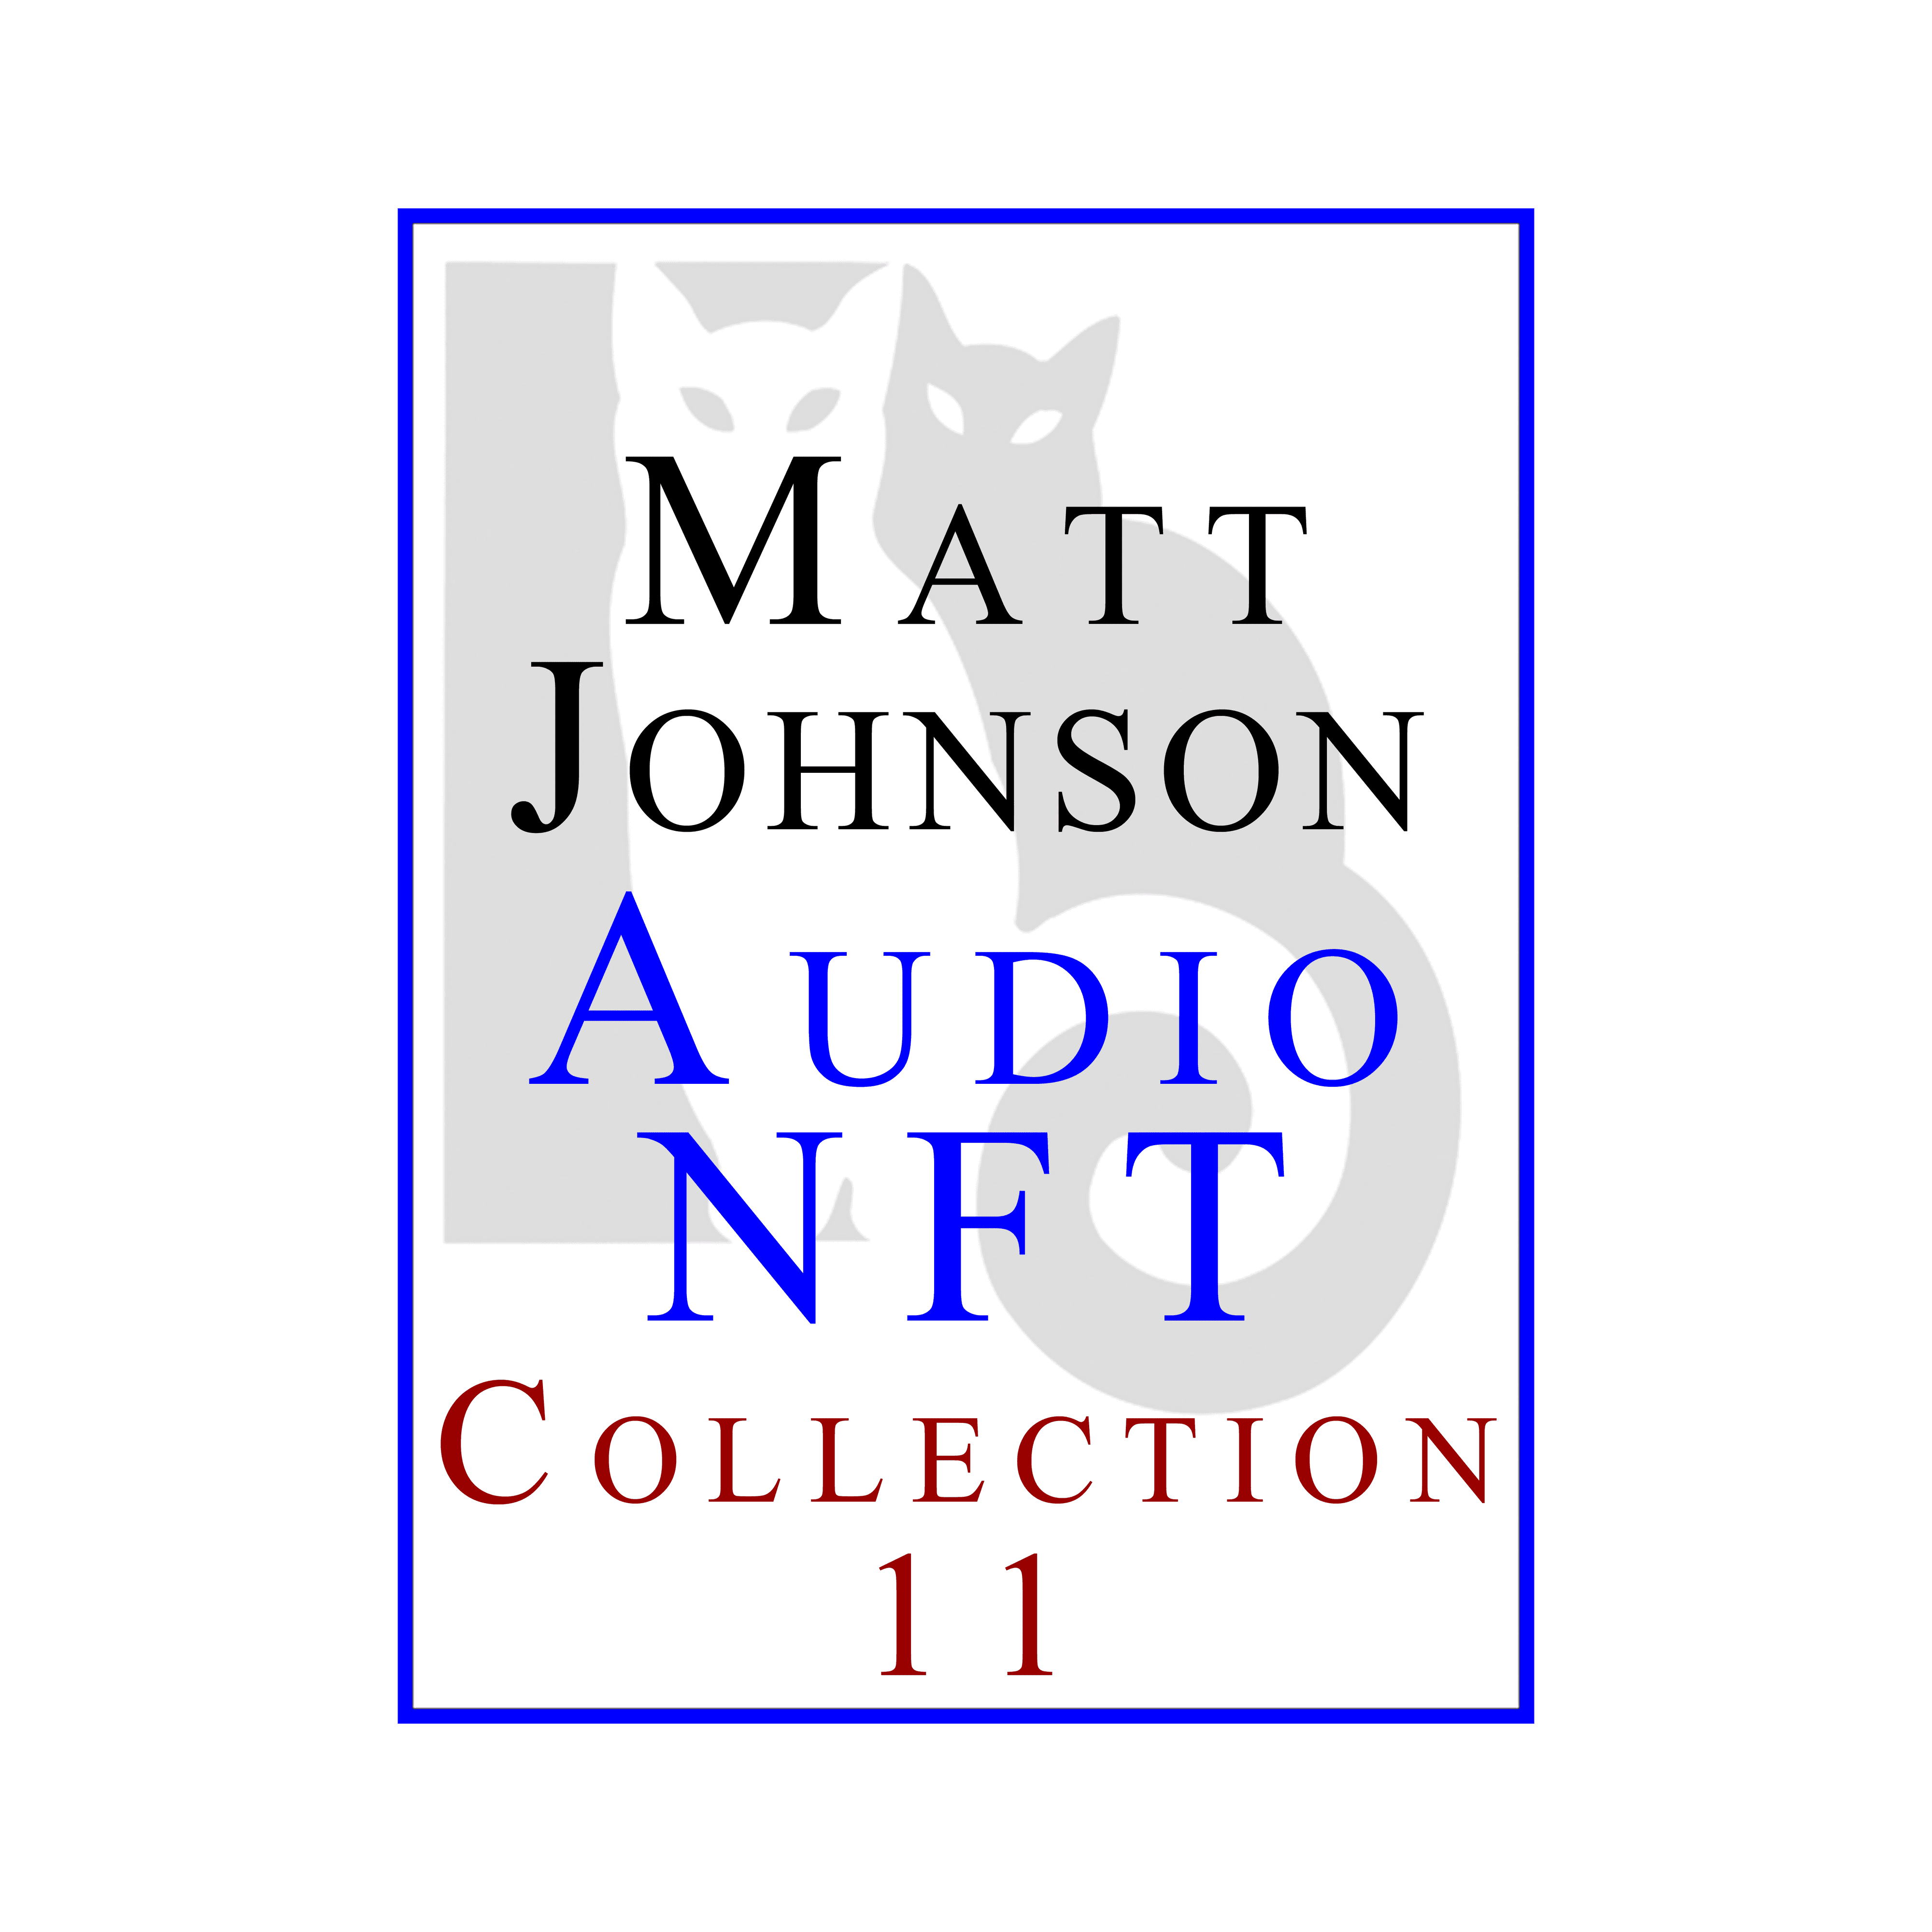 Matt Johnson Audio NFT ~ Collection 11